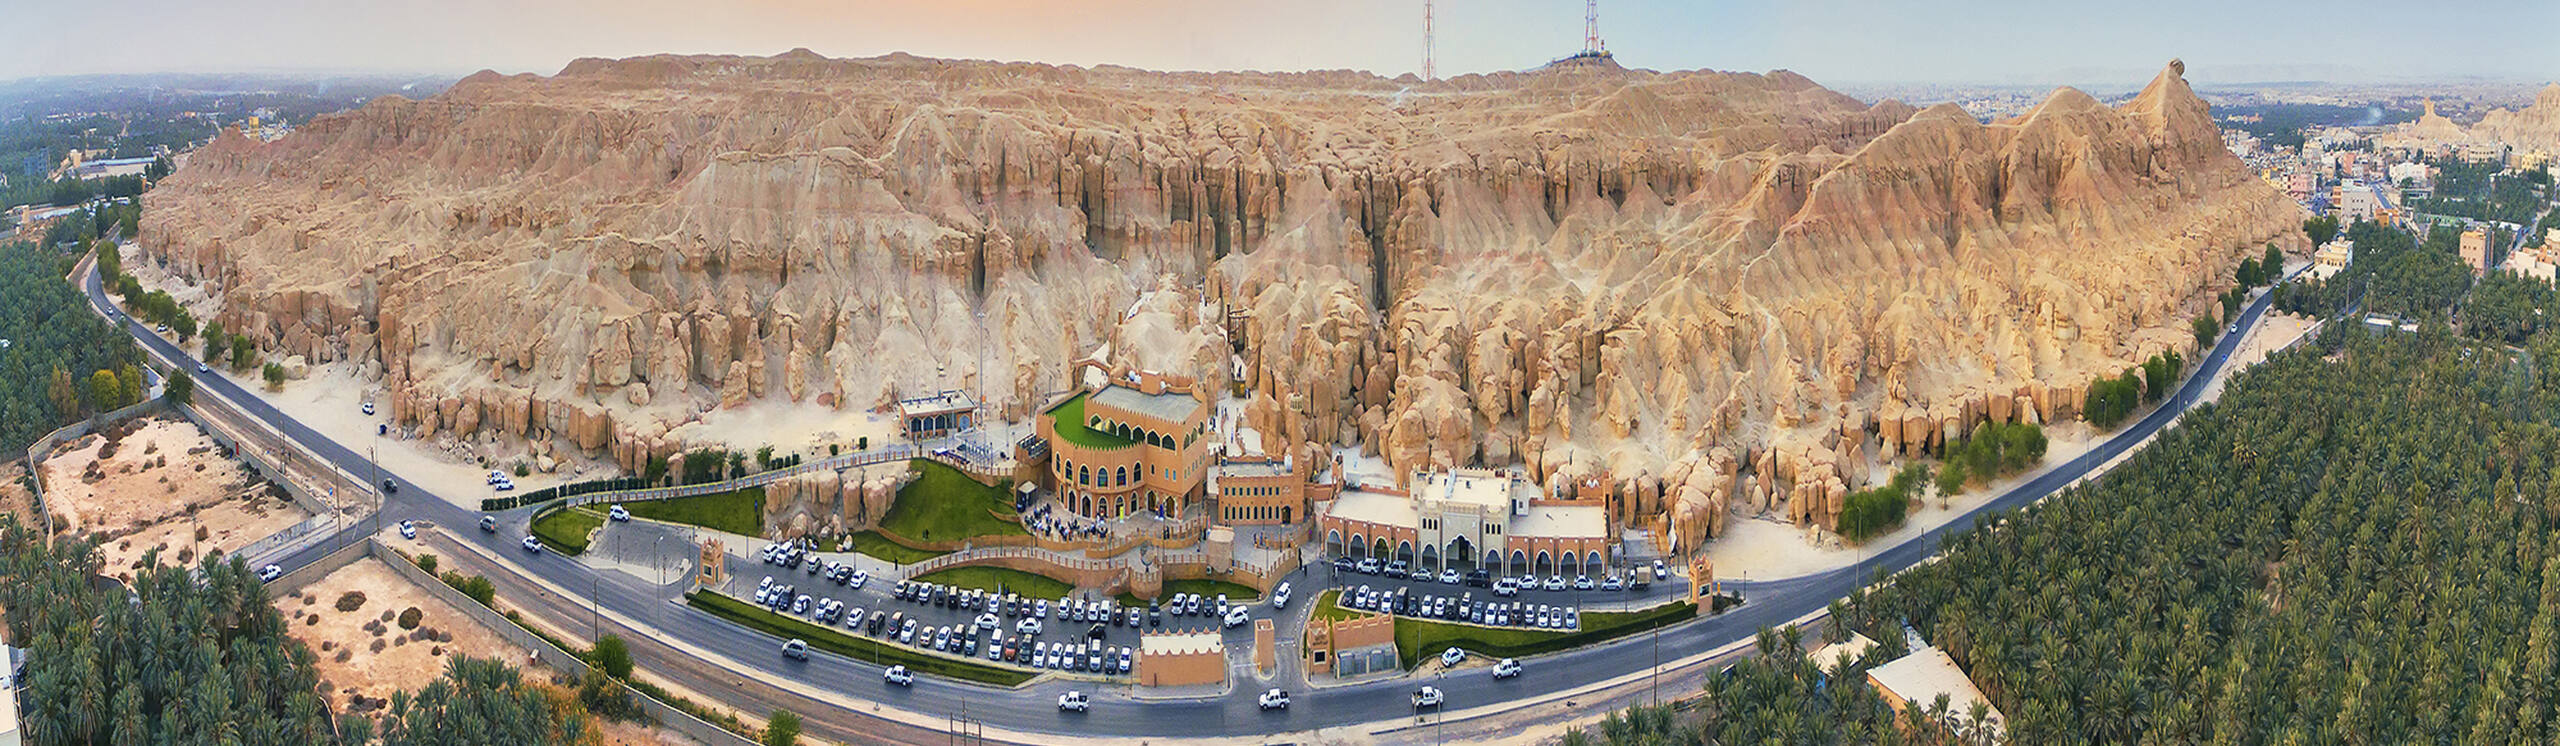 Oasis d’Al-Ahsa, un paysage culturel en évolution